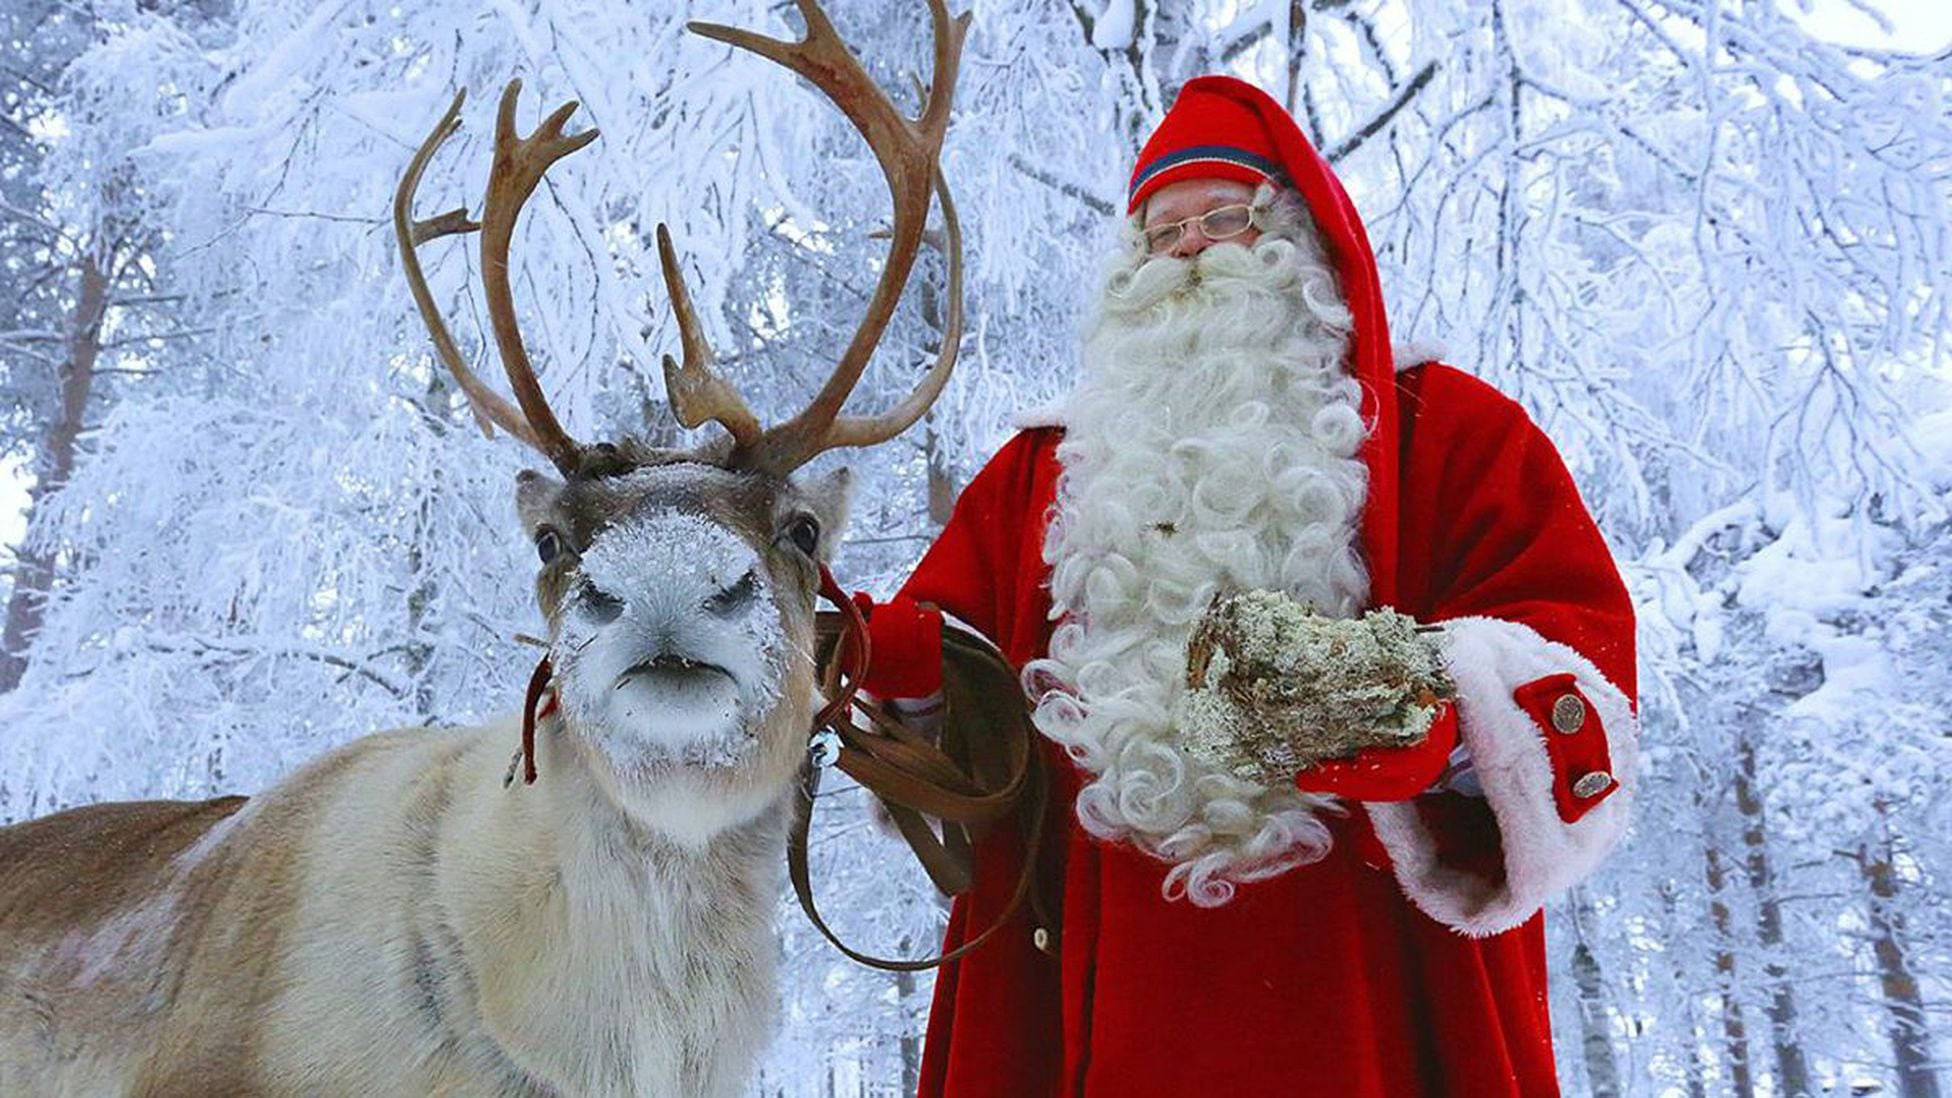 El pueblo de Papá Noel: el millonario imperio de Santa Claus en Laponia -  Tikitakas